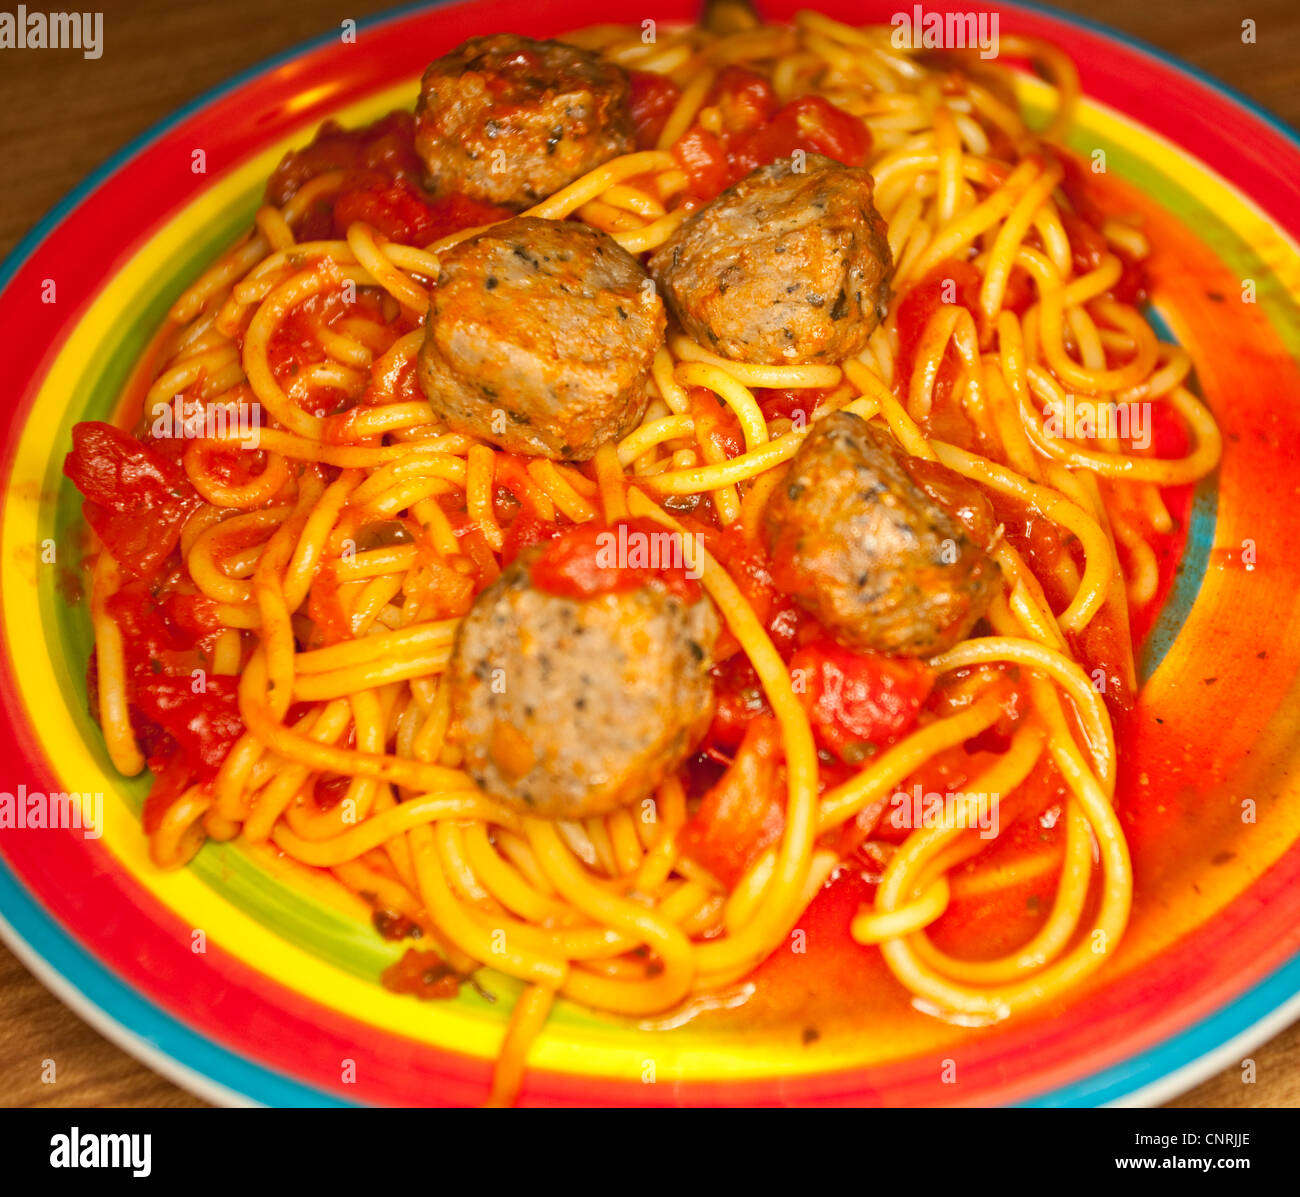 Spaghetti et boulettes de viande, gras, aliments cuillère London, England, UK Banque D'Images